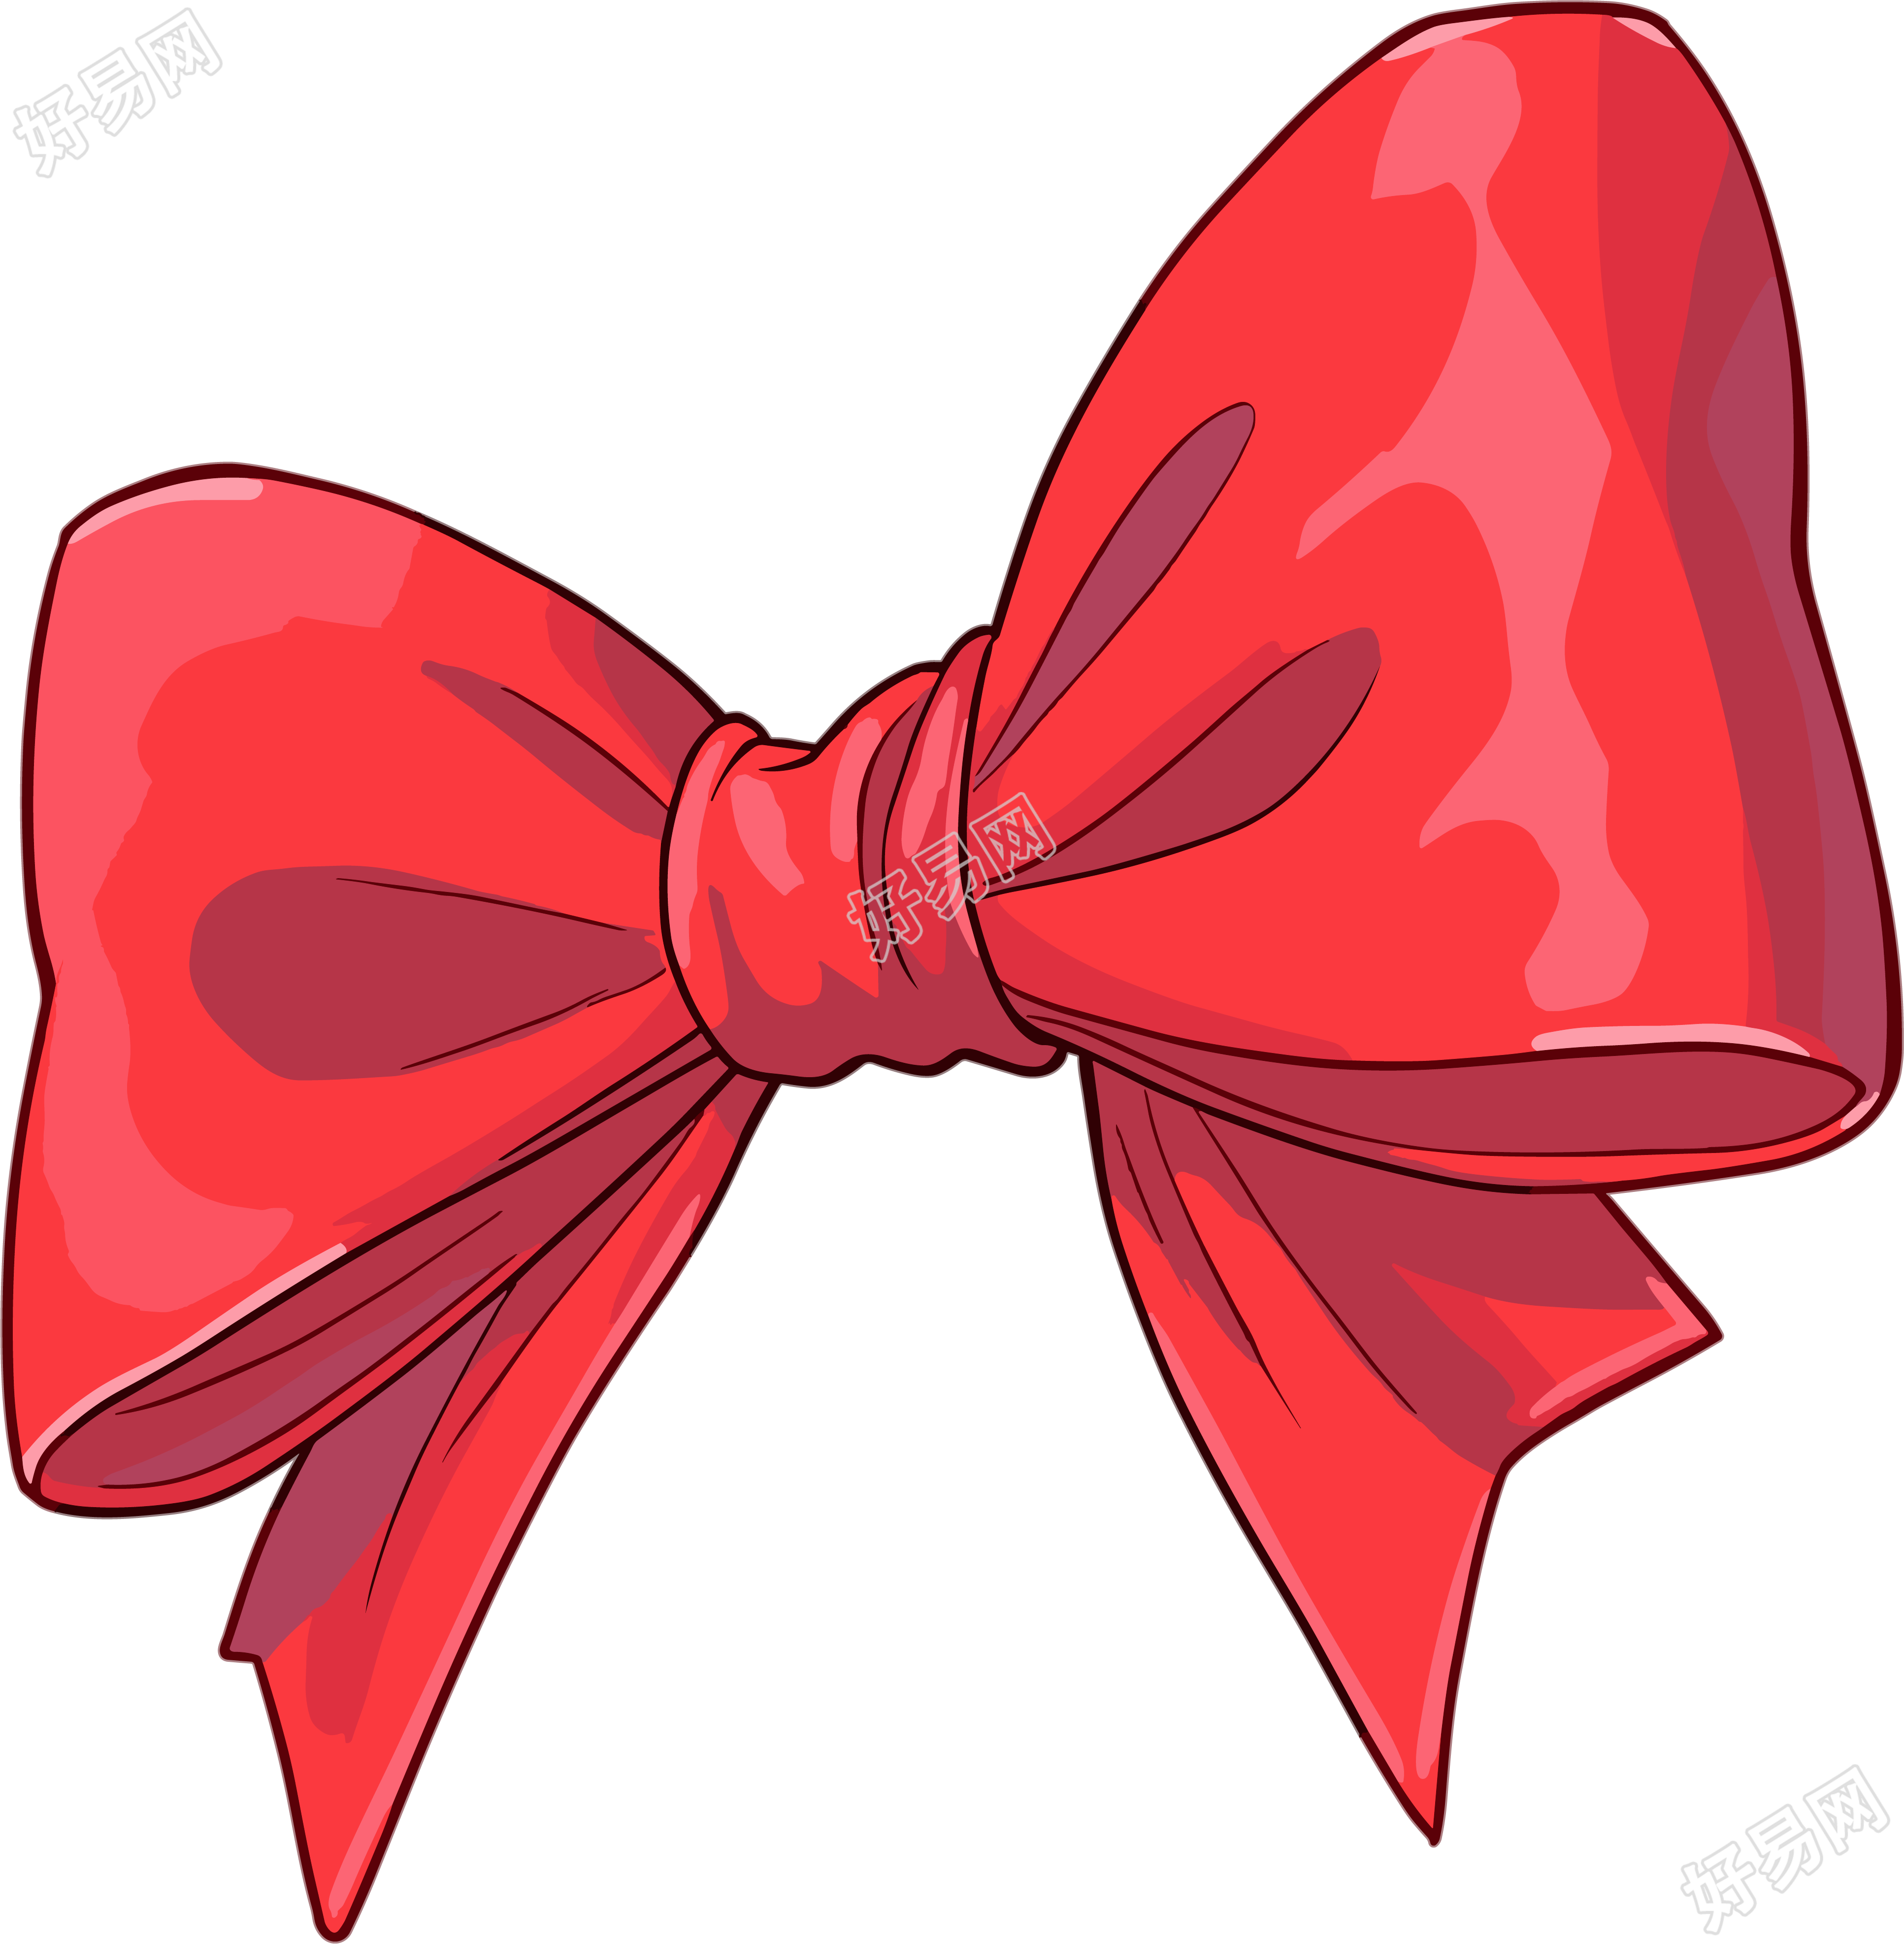 红色蝴蝶结卡通图形素材